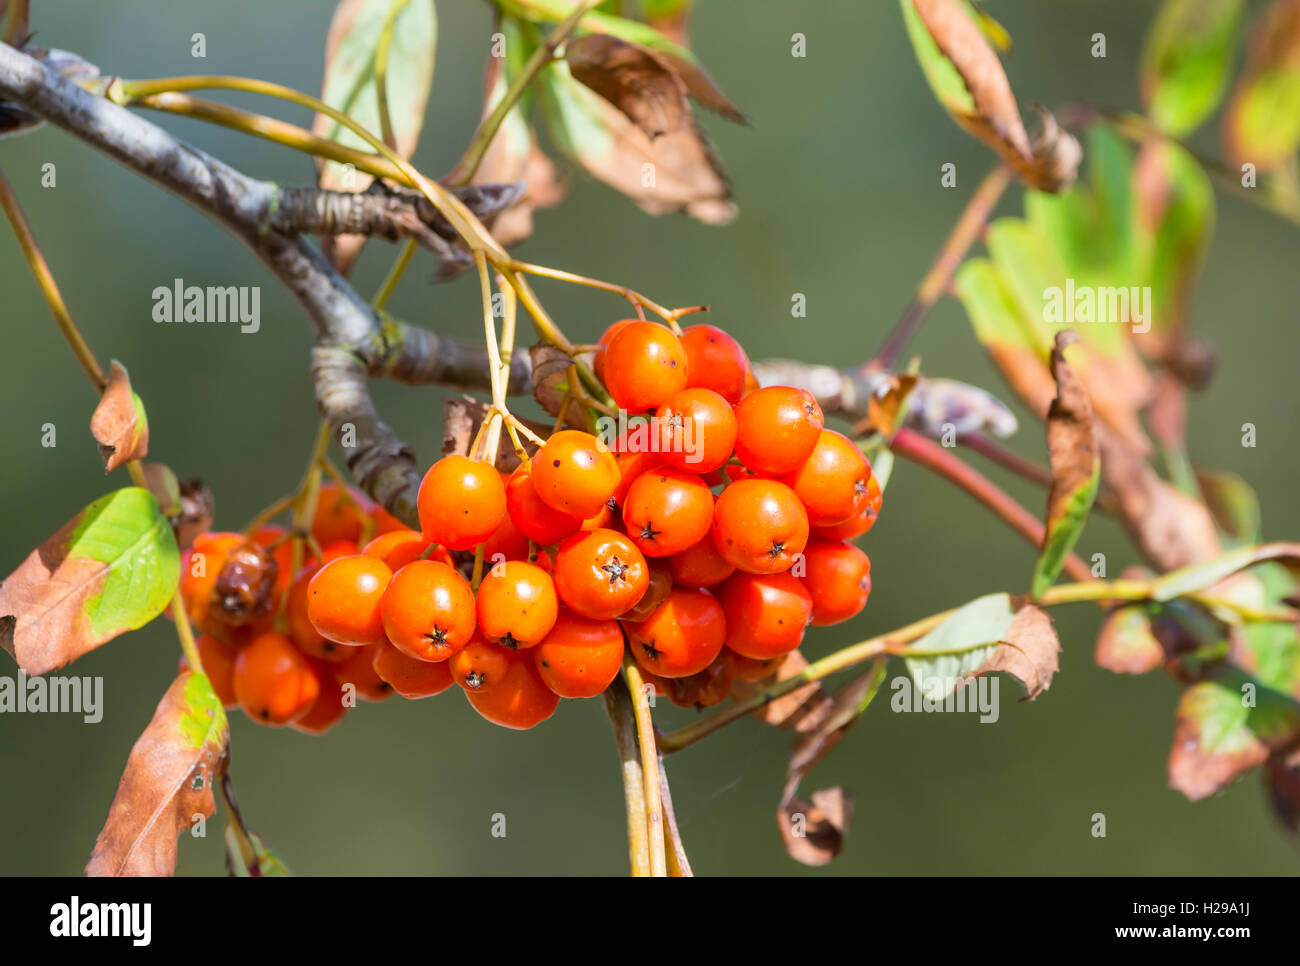 Petits fruits rouges d'un arbre sorbier (Sorbus aucuparia ou Rowan Tree) au début de l'automne au Royaume-Uni. Banque D'Images